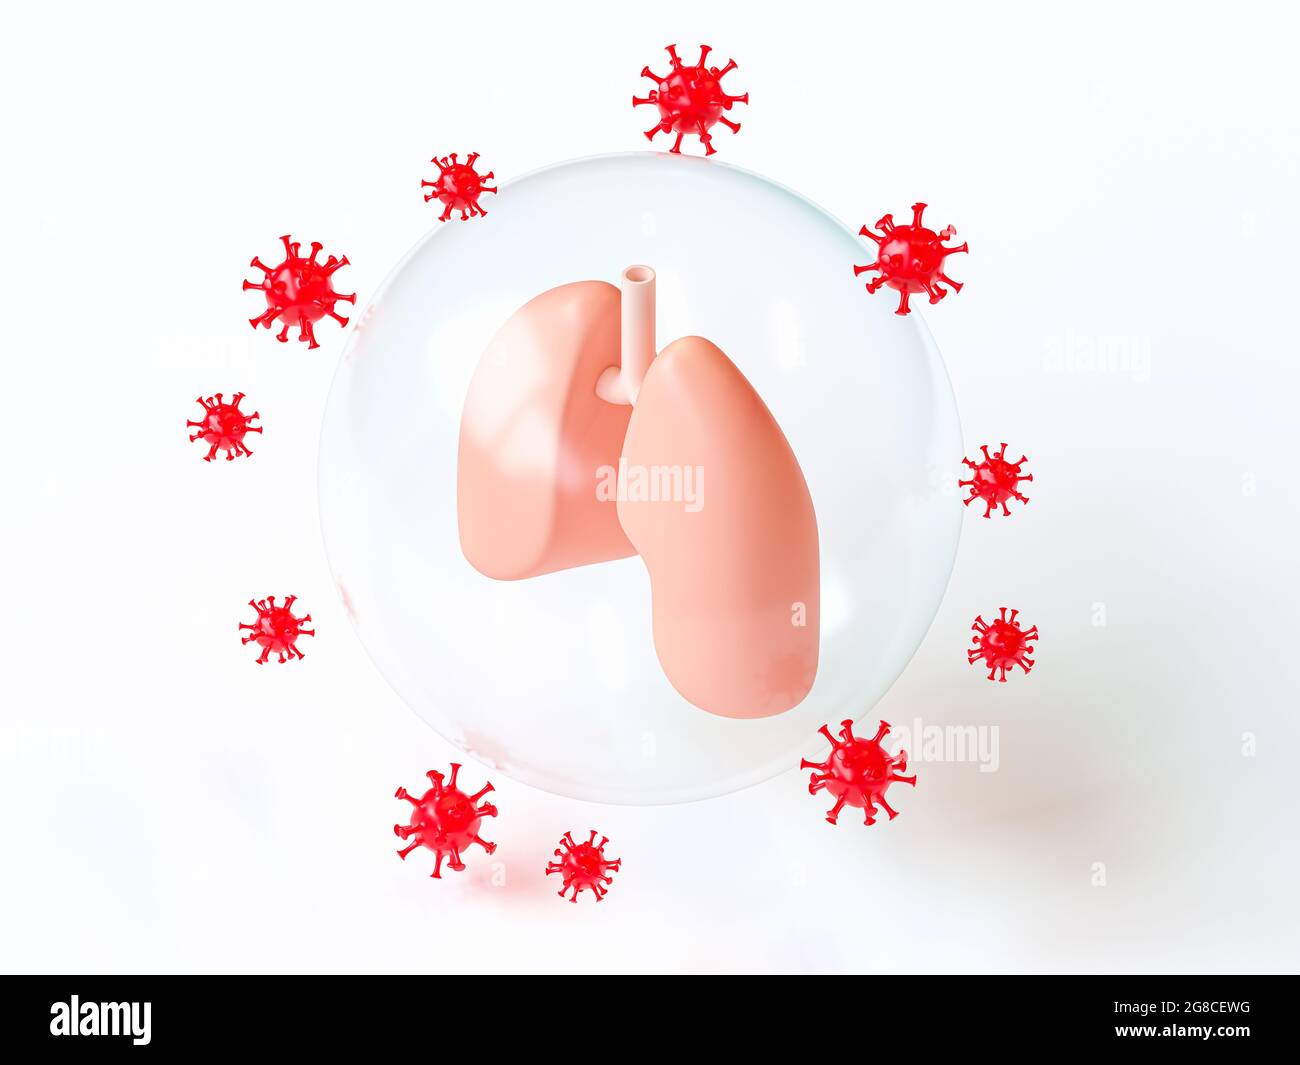 Menschliche Lungen, geschützt durch Schutz vor Virenangriffen, Thema einer Corona-Virus-Pandemie, 3d-Illustration, inspiriert durch flaches Design Stockfoto